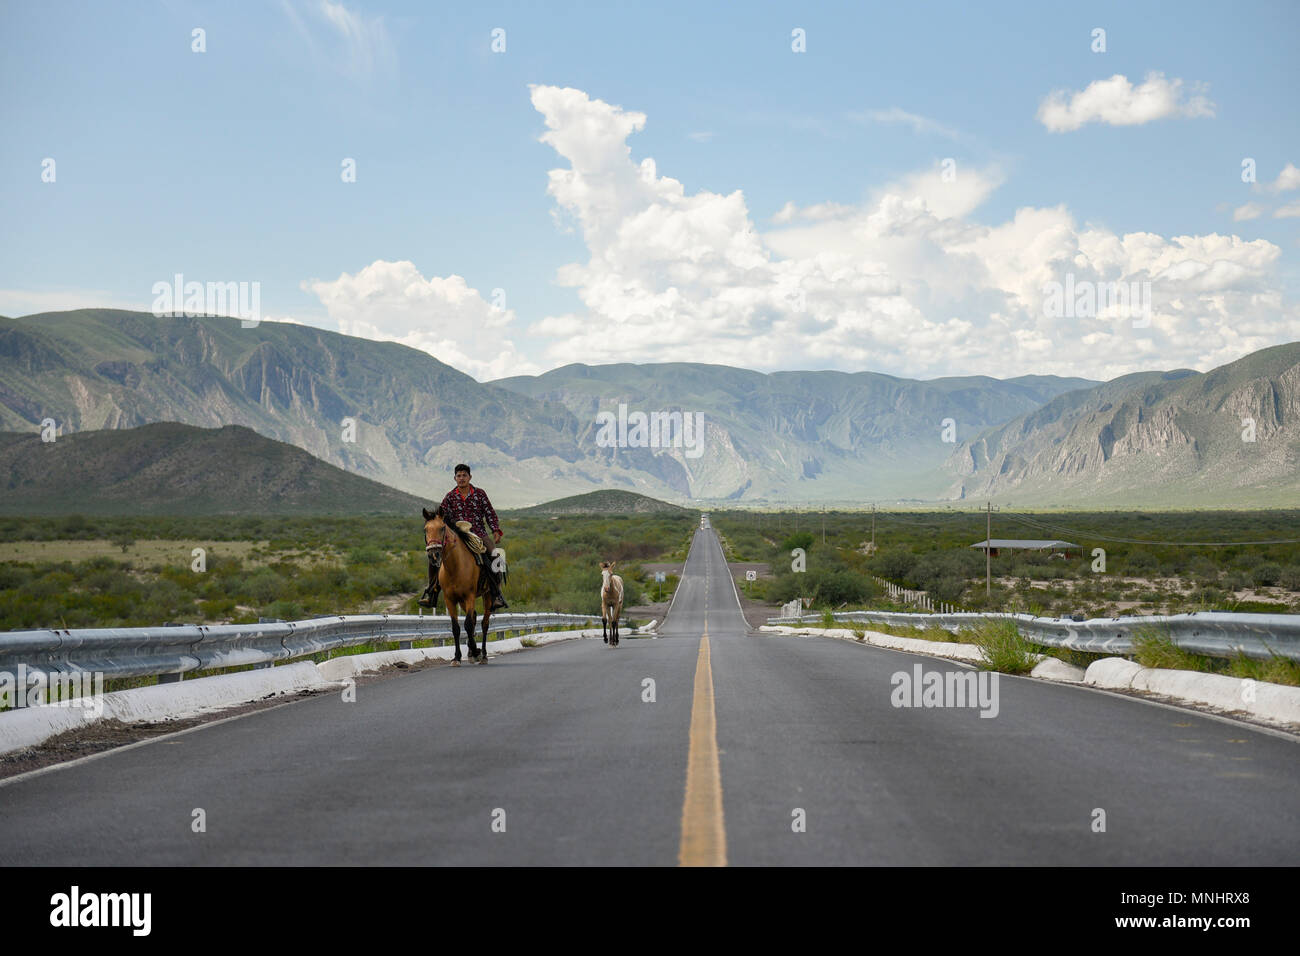 Vue de face de l'homme cheval d'équitation le long de la route avec des montagnes en arrière-plan, Durango, Mexique Banque D'Images